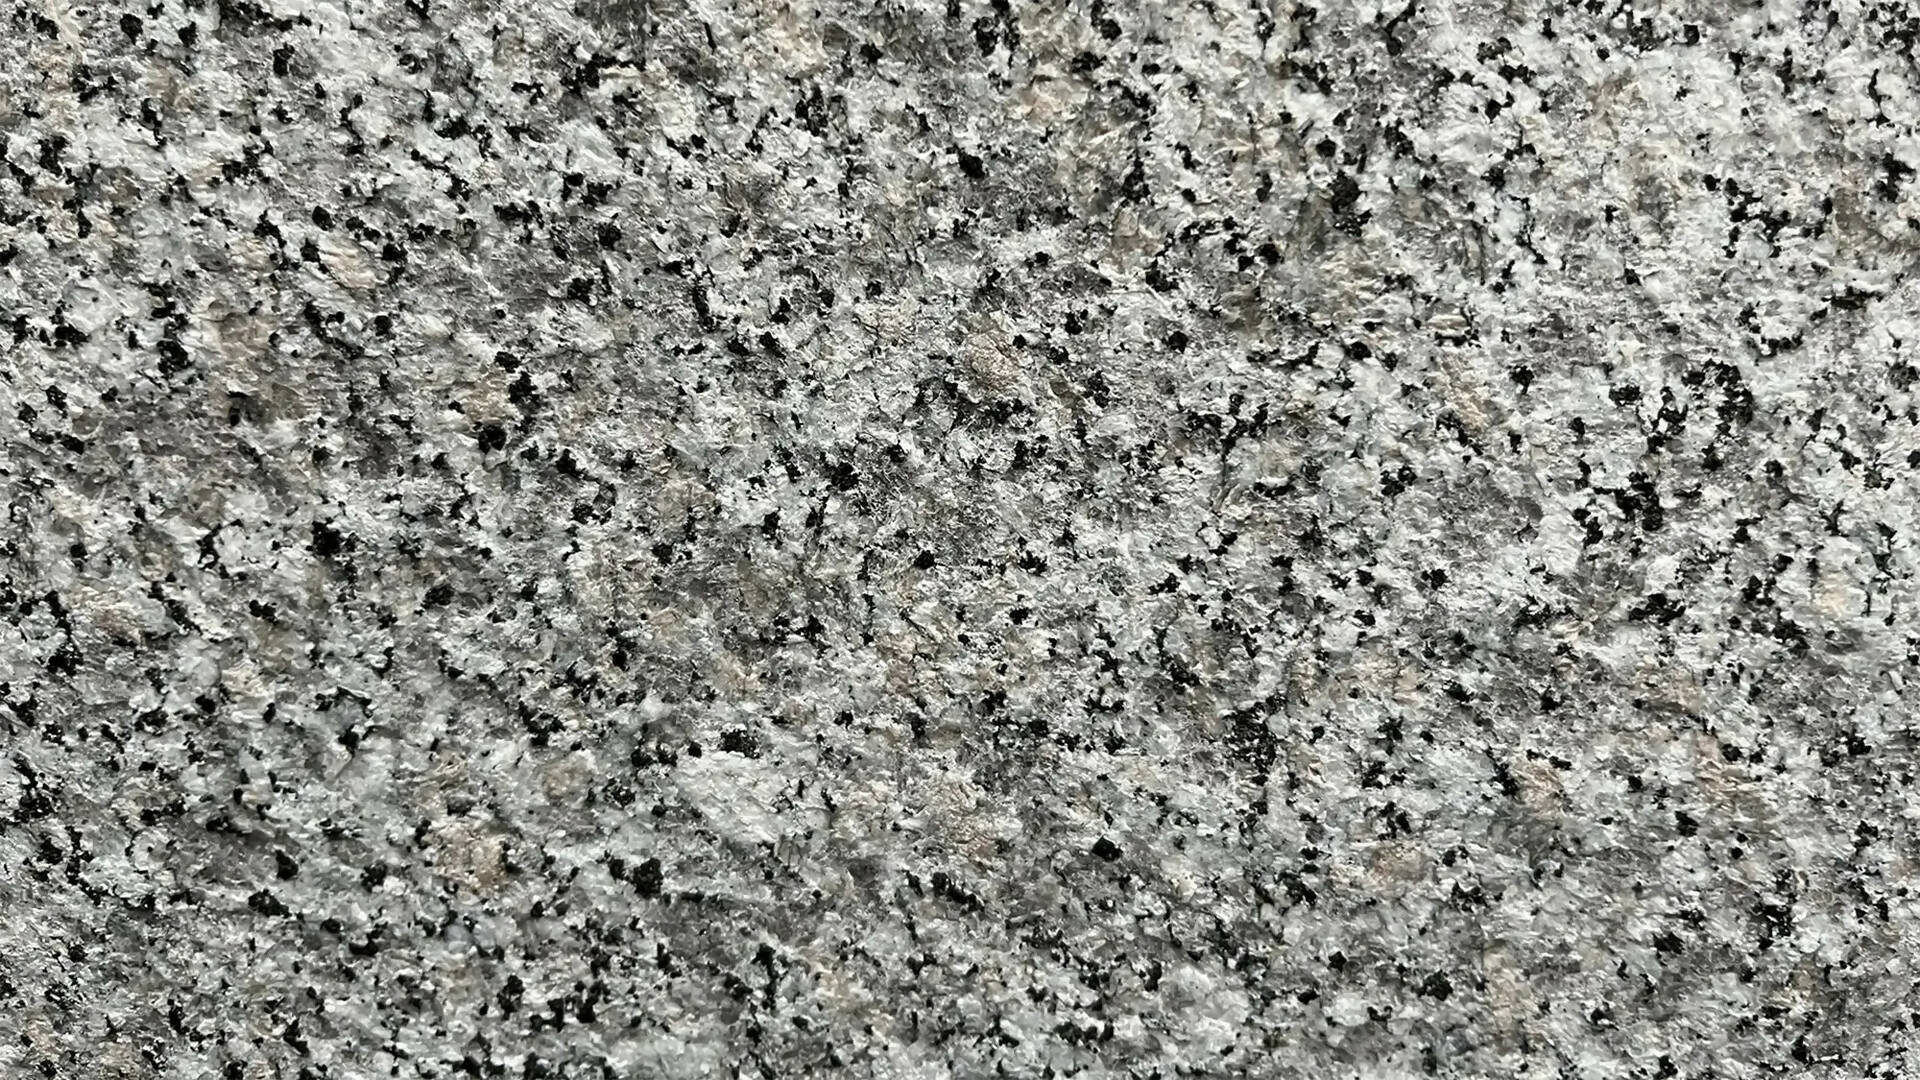 ROSE SARDE GRANITE,Granite,Brachot,www.work-tops.com